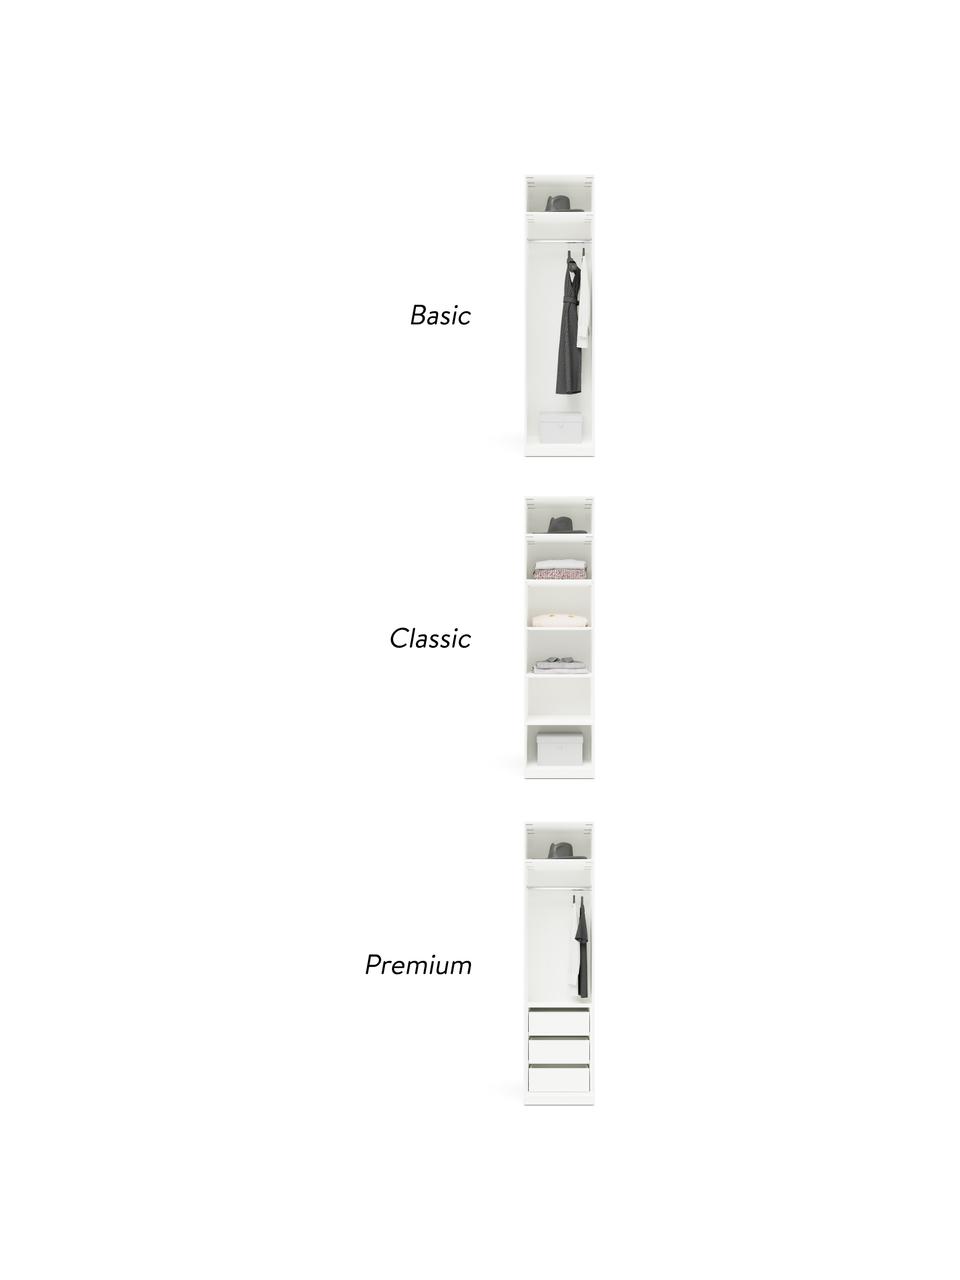 Modulaire draaideurkast Charlotte in beige, 50 cm breed, meerdere varianten, Frame: met melamine beklede spaa, Beige, Basis interieur, hoogte 200 cm